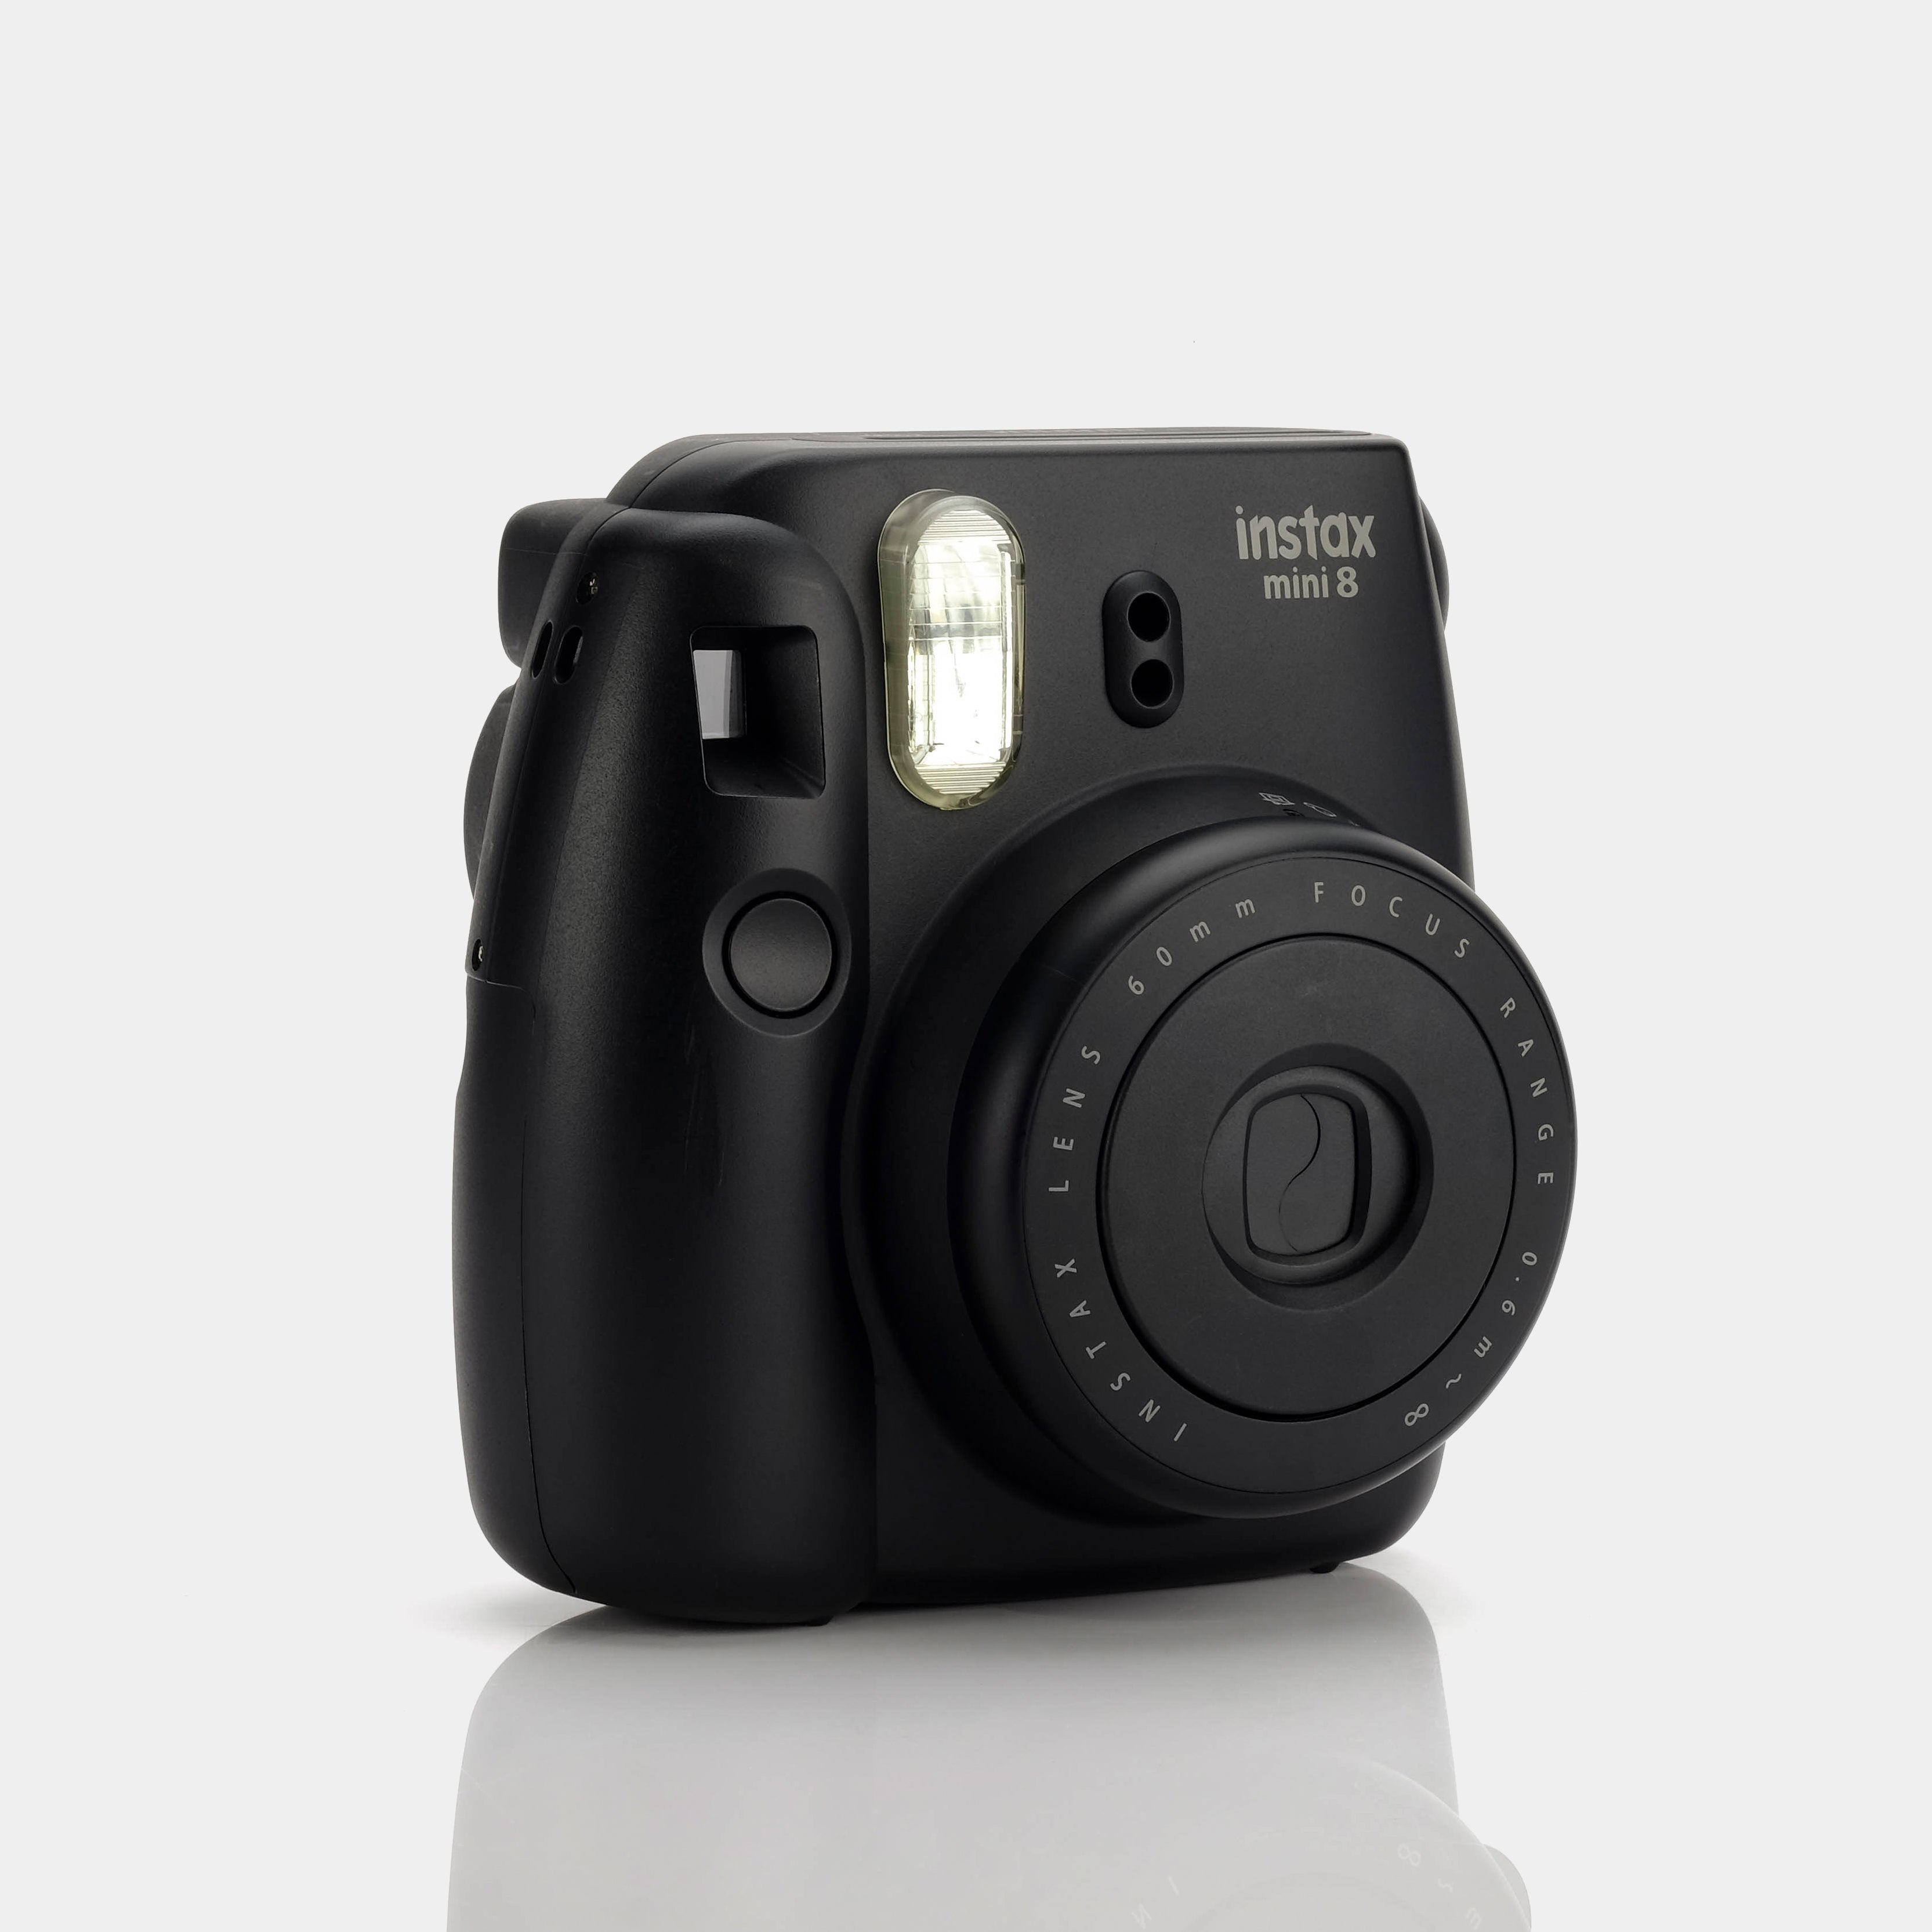 Fujifilm Instax Mini 8 Black Instant Film Camera - Refurbished